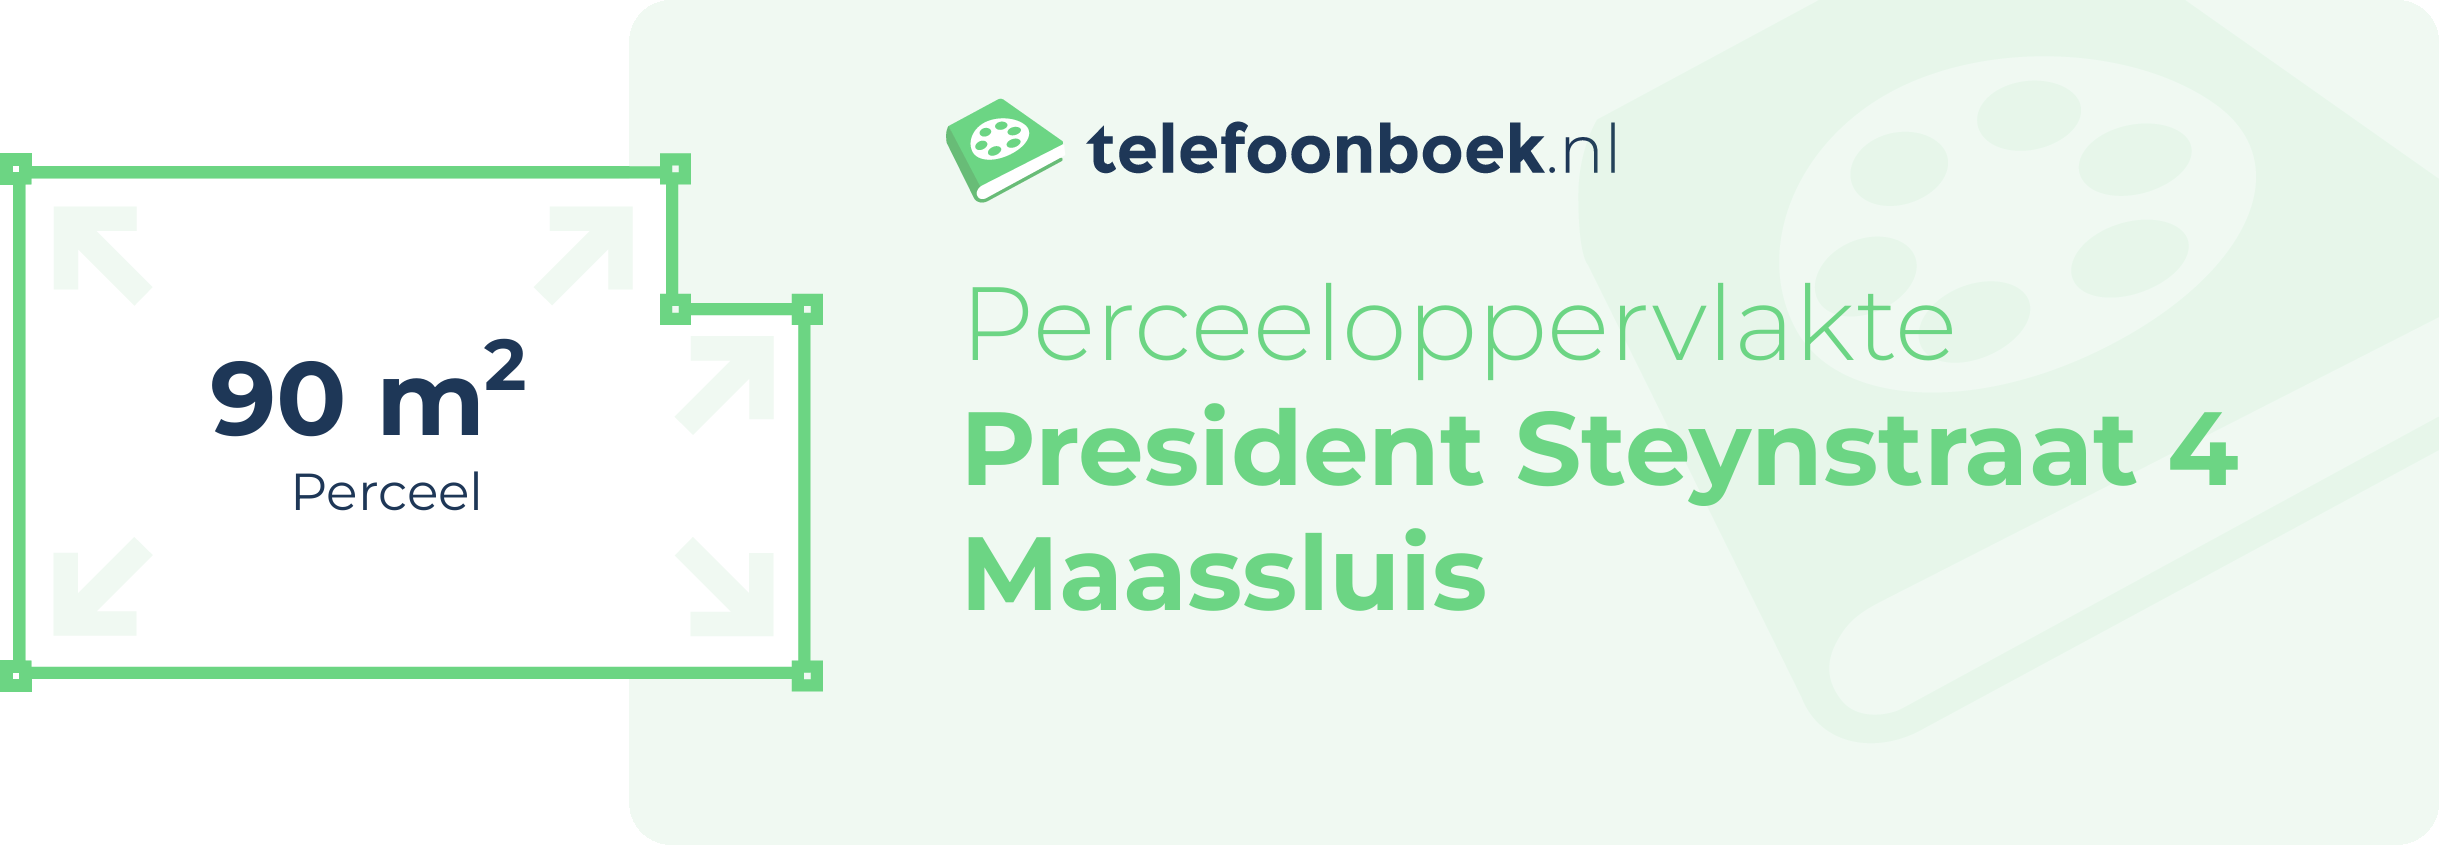 Perceeloppervlakte President Steynstraat 4 Maassluis